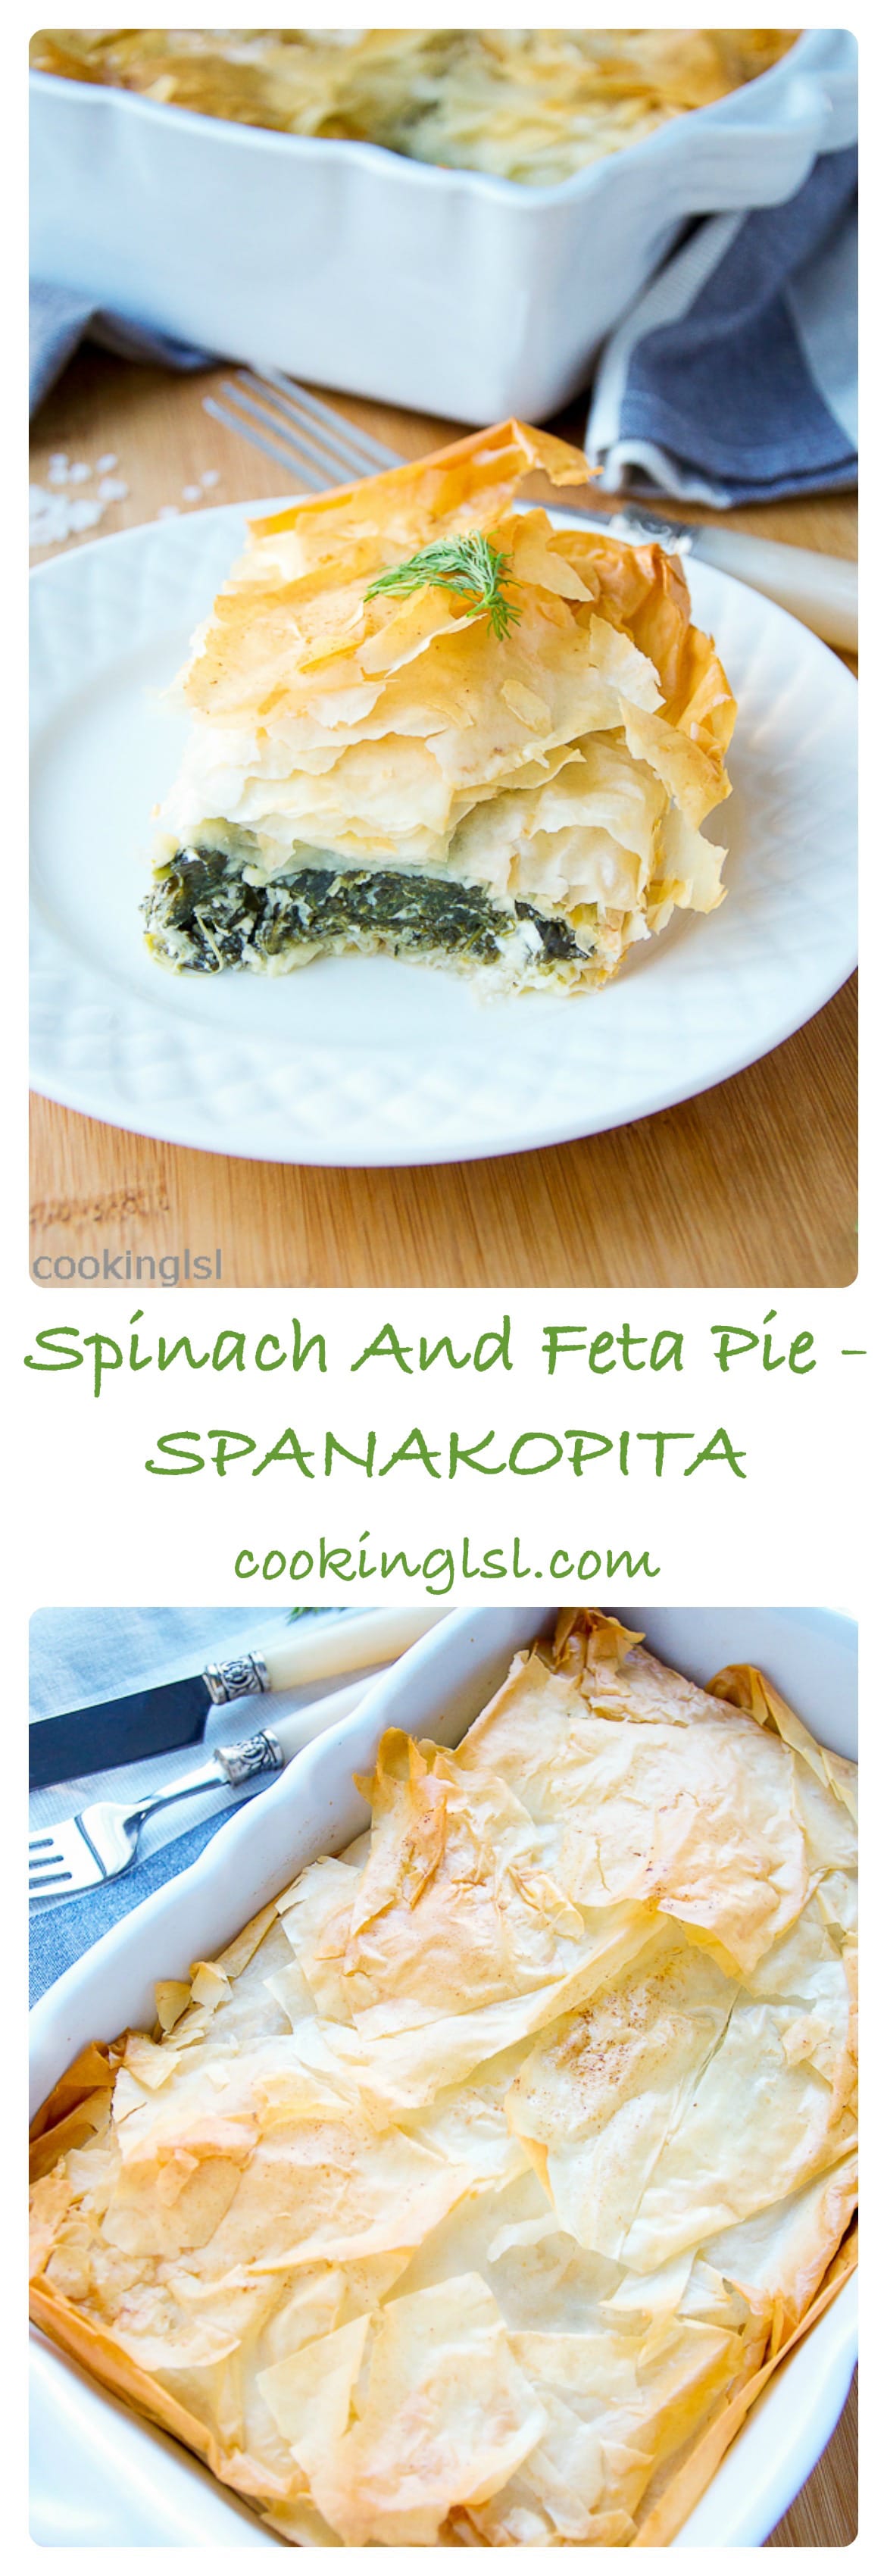 spinach-feta-pie-spanakopita